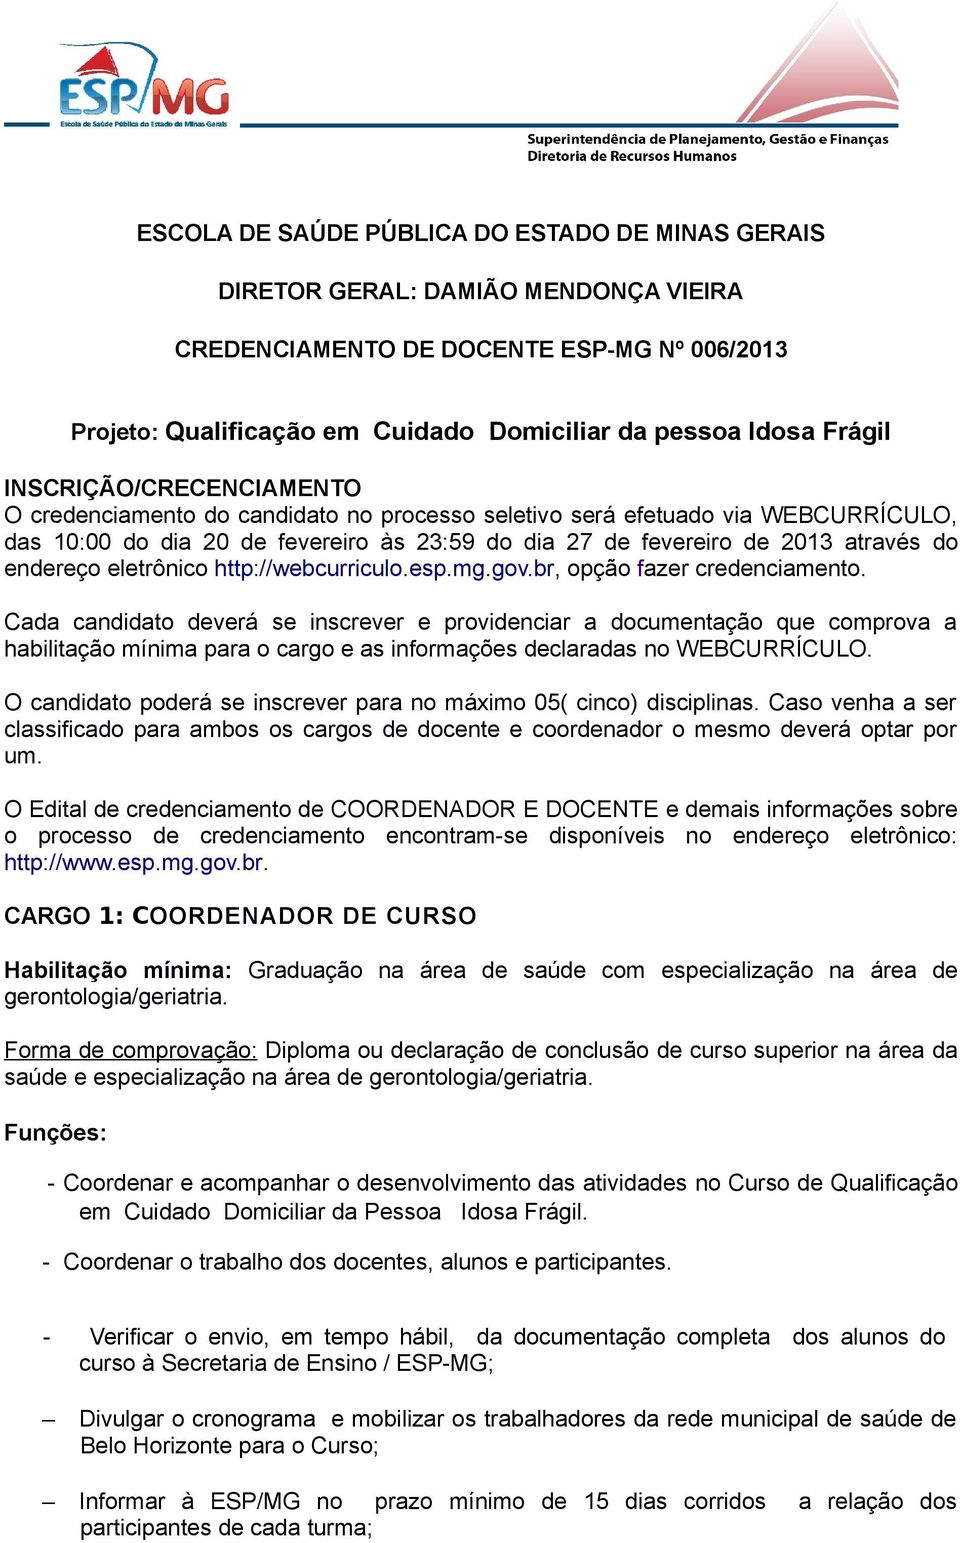 endereço eletrônico http://webcurriculo.esp.mg.gov.br, opção fazer credenciamento.